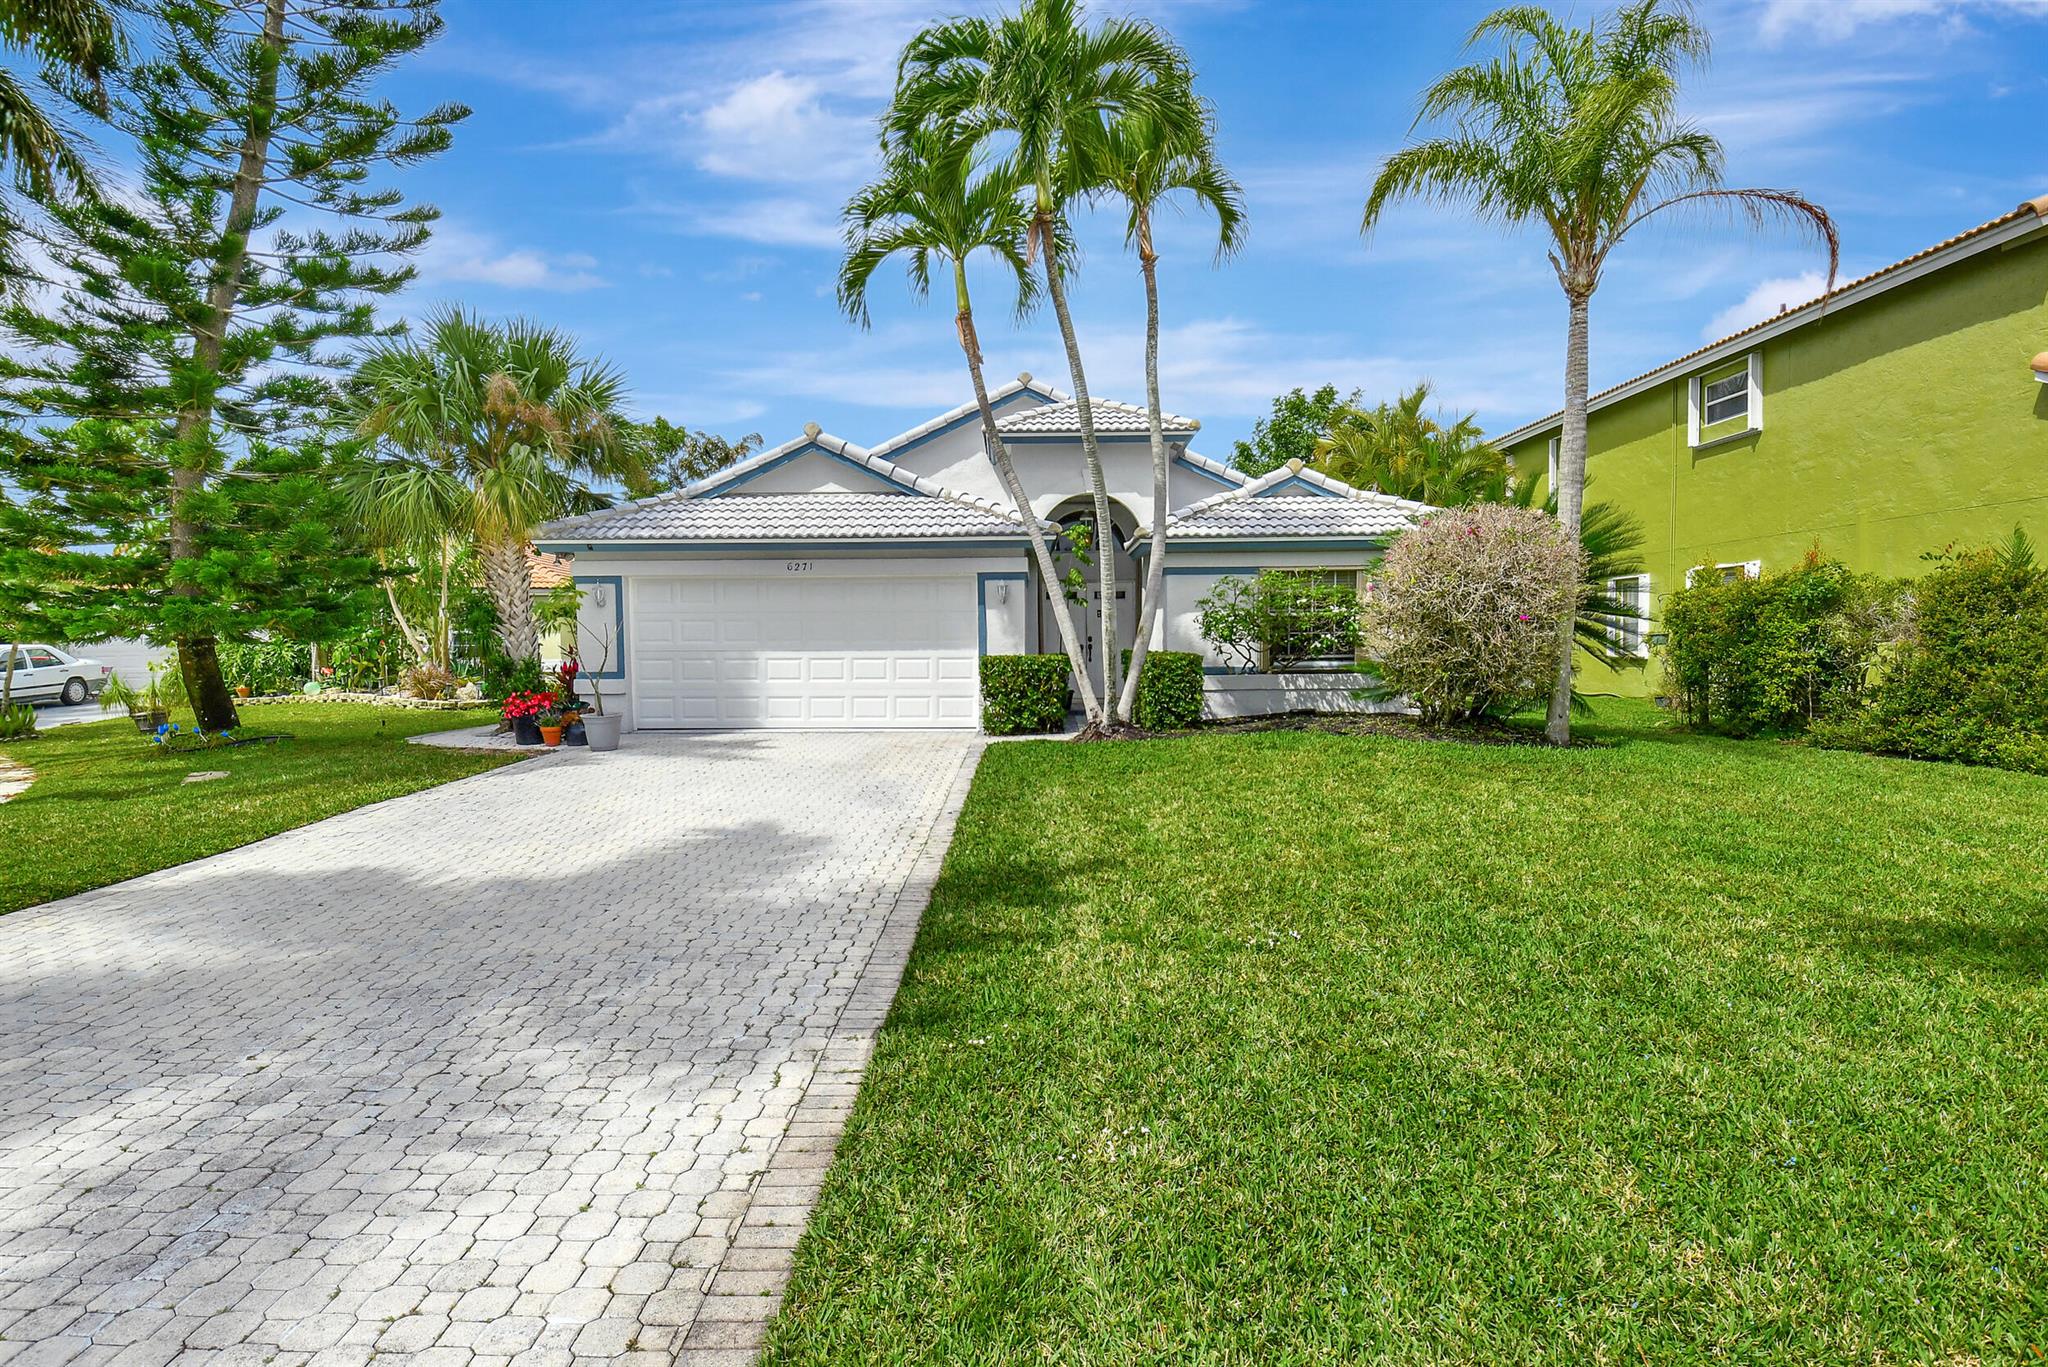 House for Sale in Boynton Beach, FL